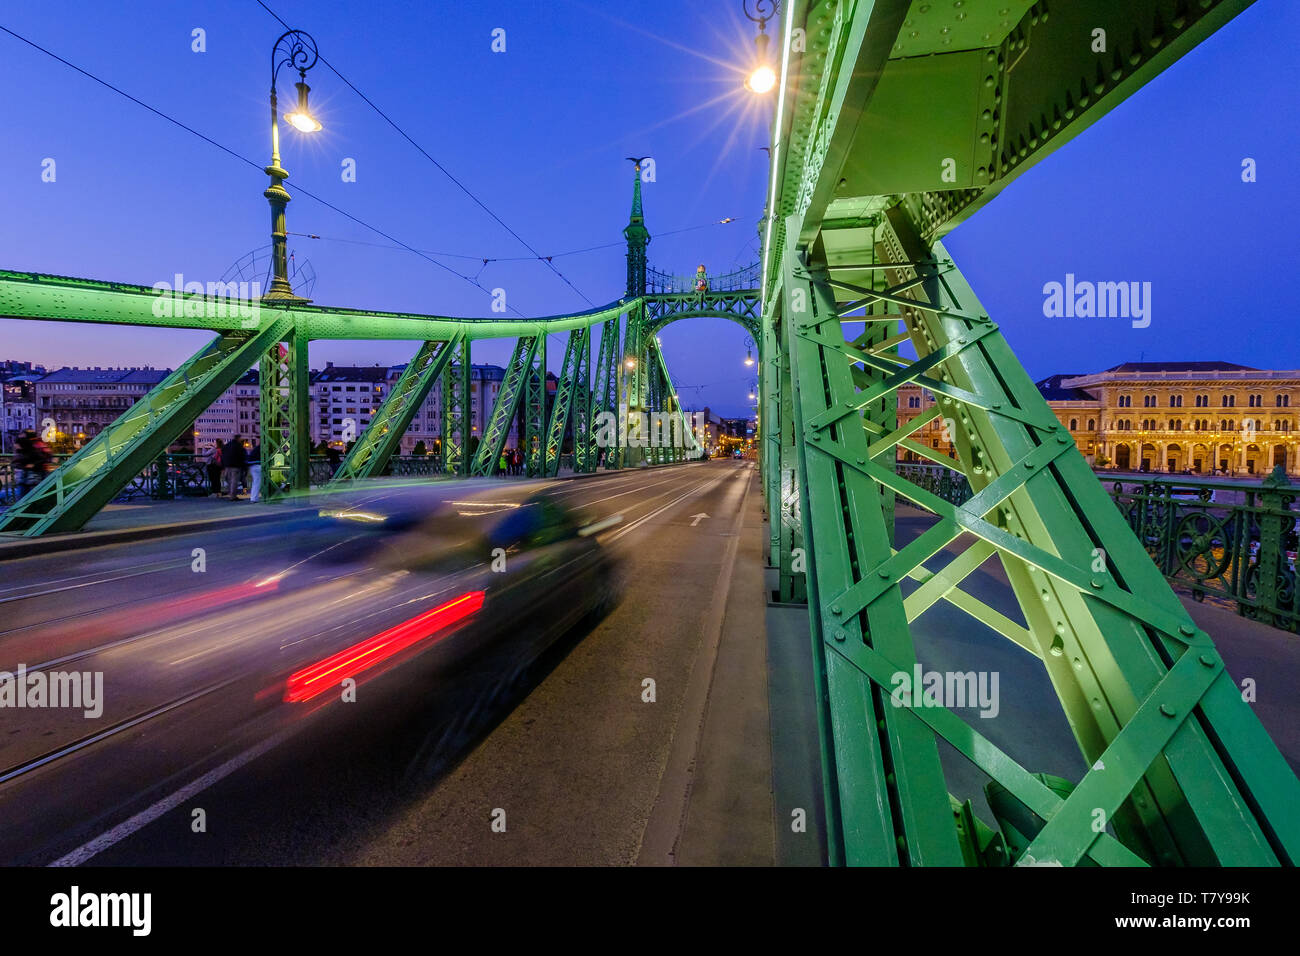 Danubia Fluss, Budapest, Ungarn: street scene auf der Freiheitsbrücke zabadság hid', Jugendstil, Blaue Stunde Langzeitbelichtung. Blick Richtung Pest. Stockfoto